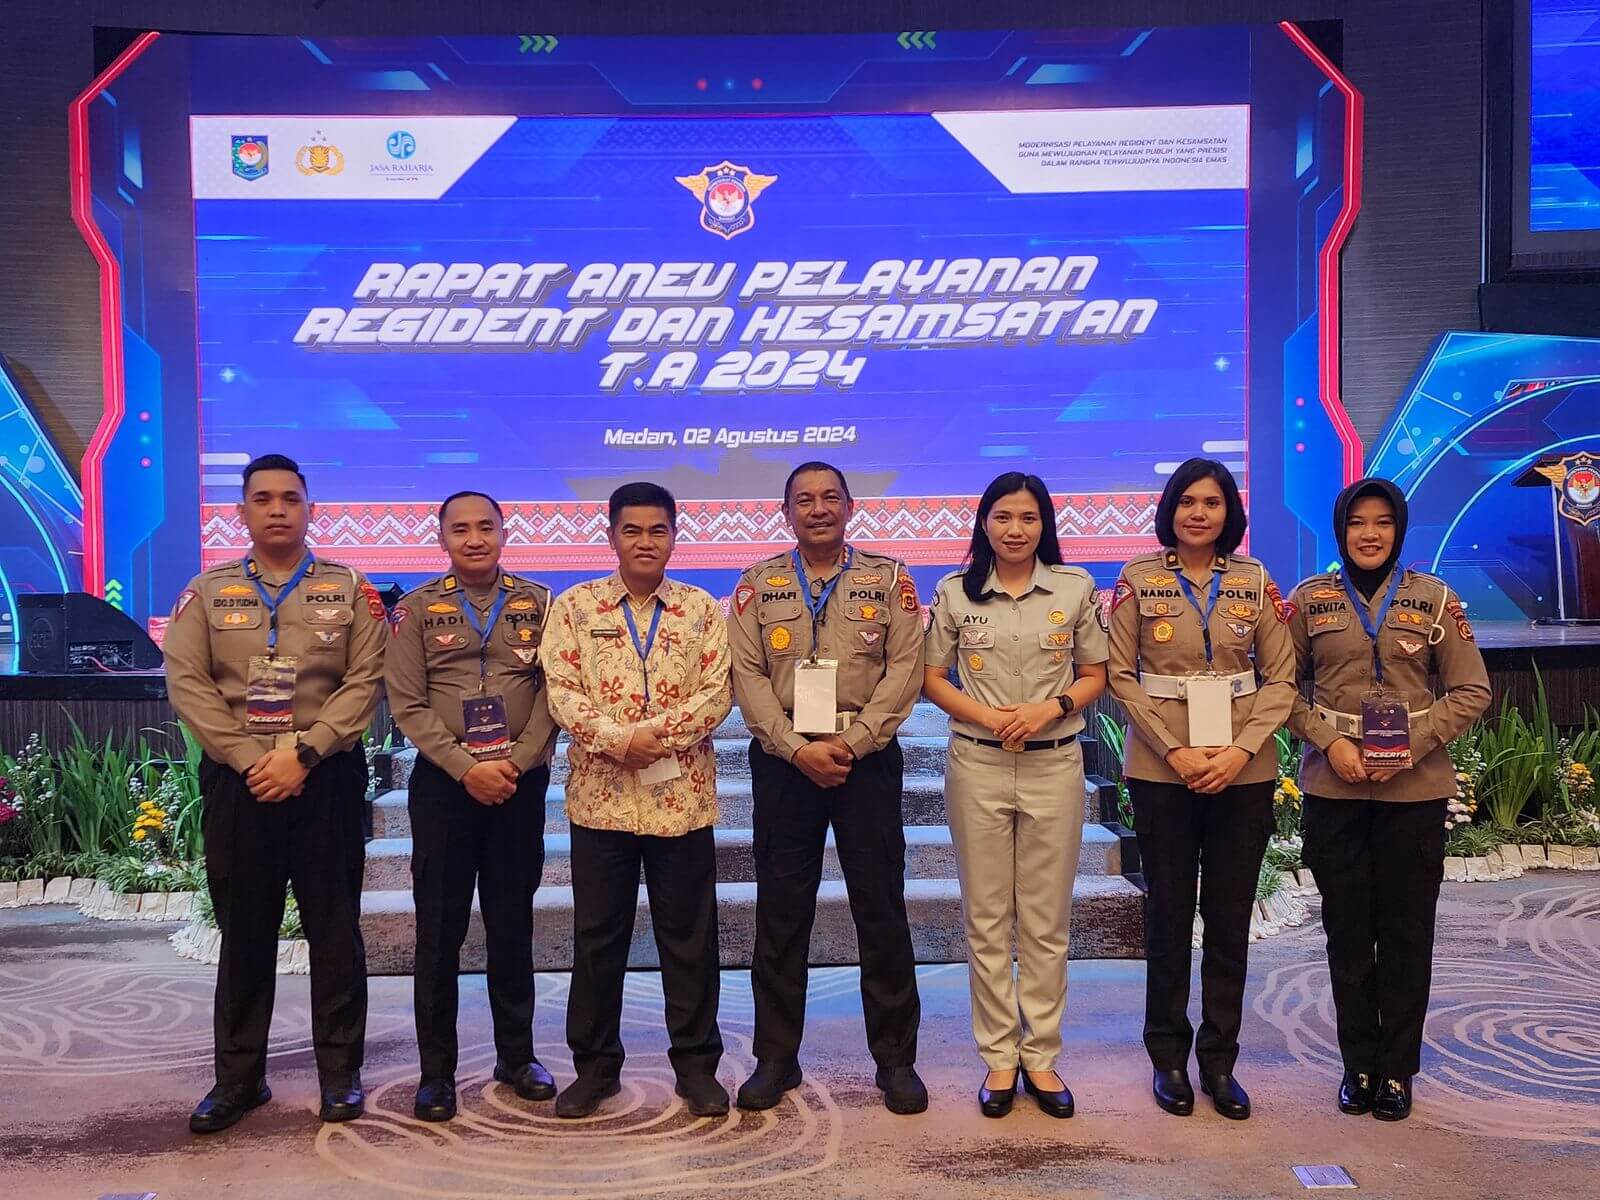 Tim Pembina Samsat Provinsi Jambi Hadiri Rapat Anev Pelayanan Regident dan Kesamsatan 2024 di Medan